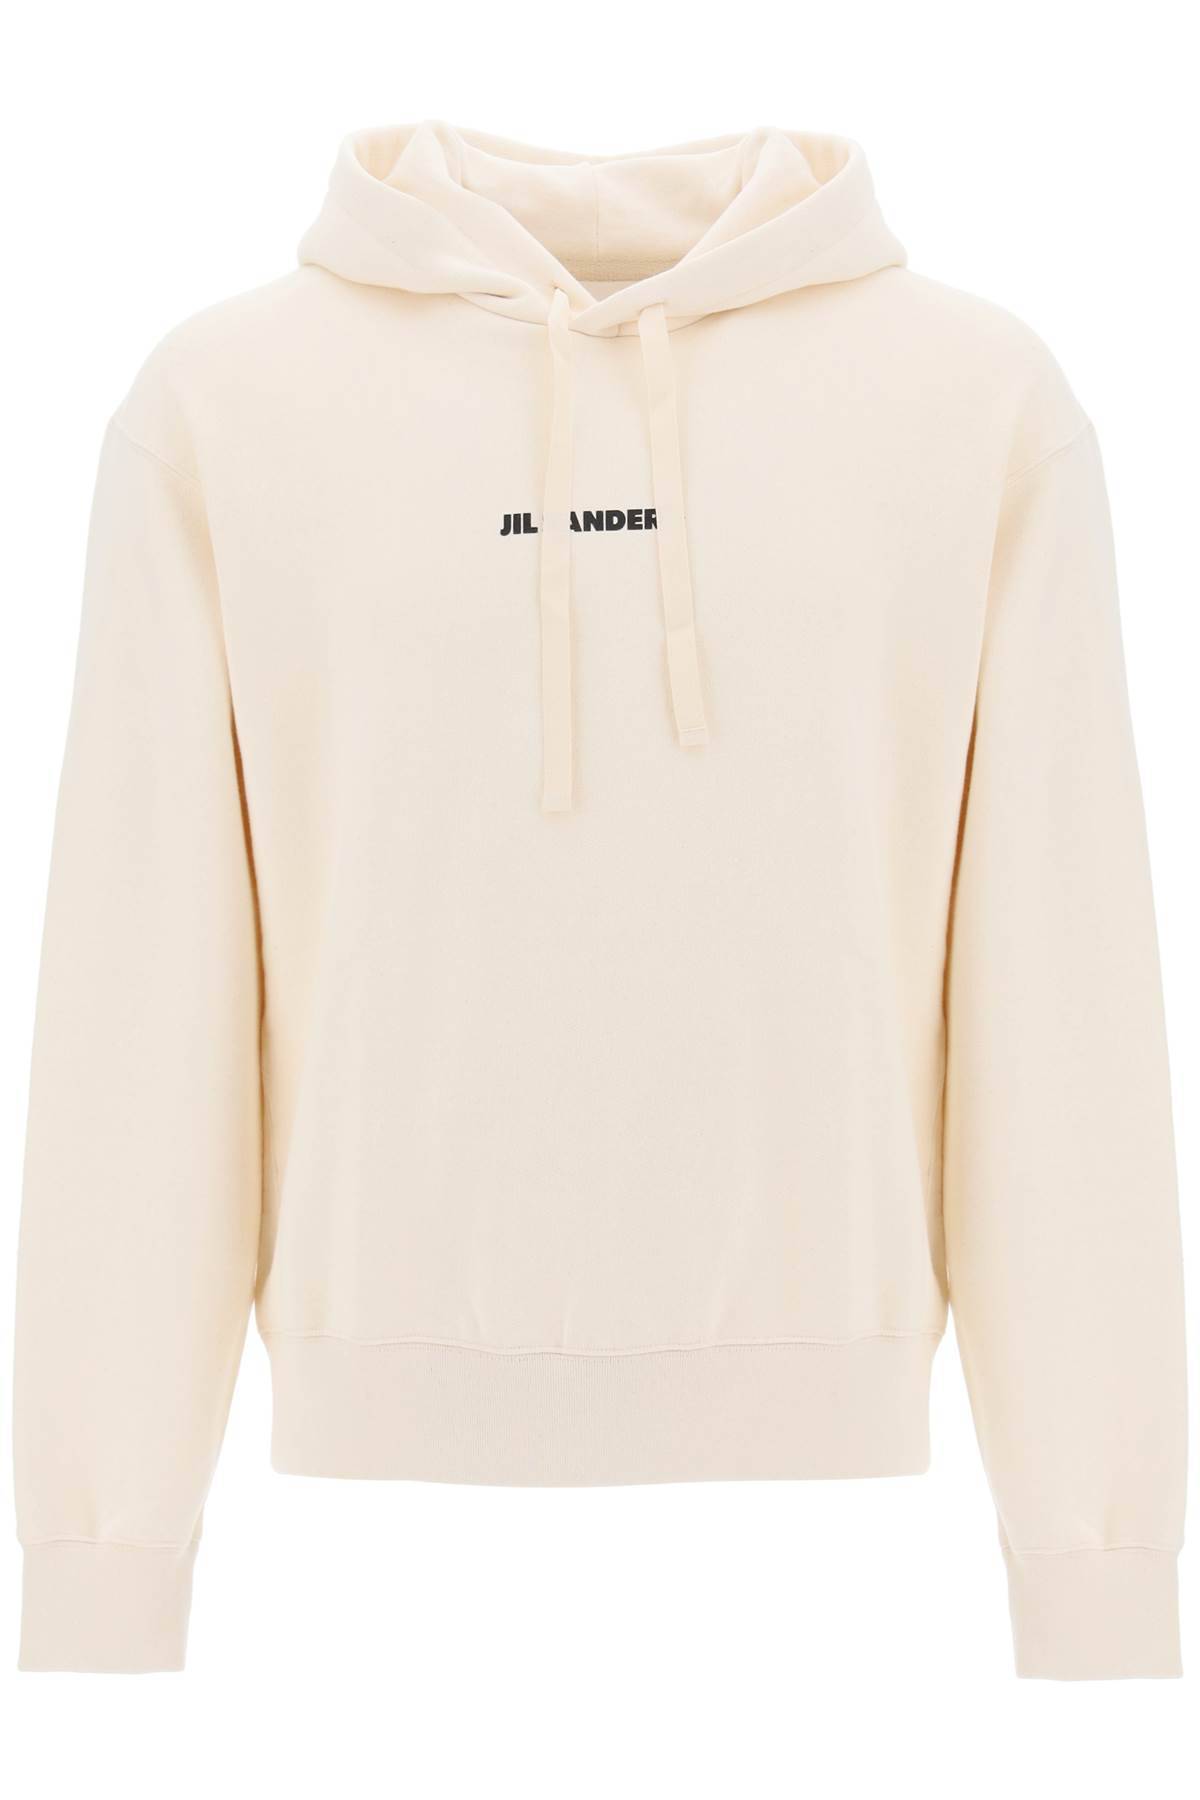 Jil Sander JIL SANDER hoodie with logo print